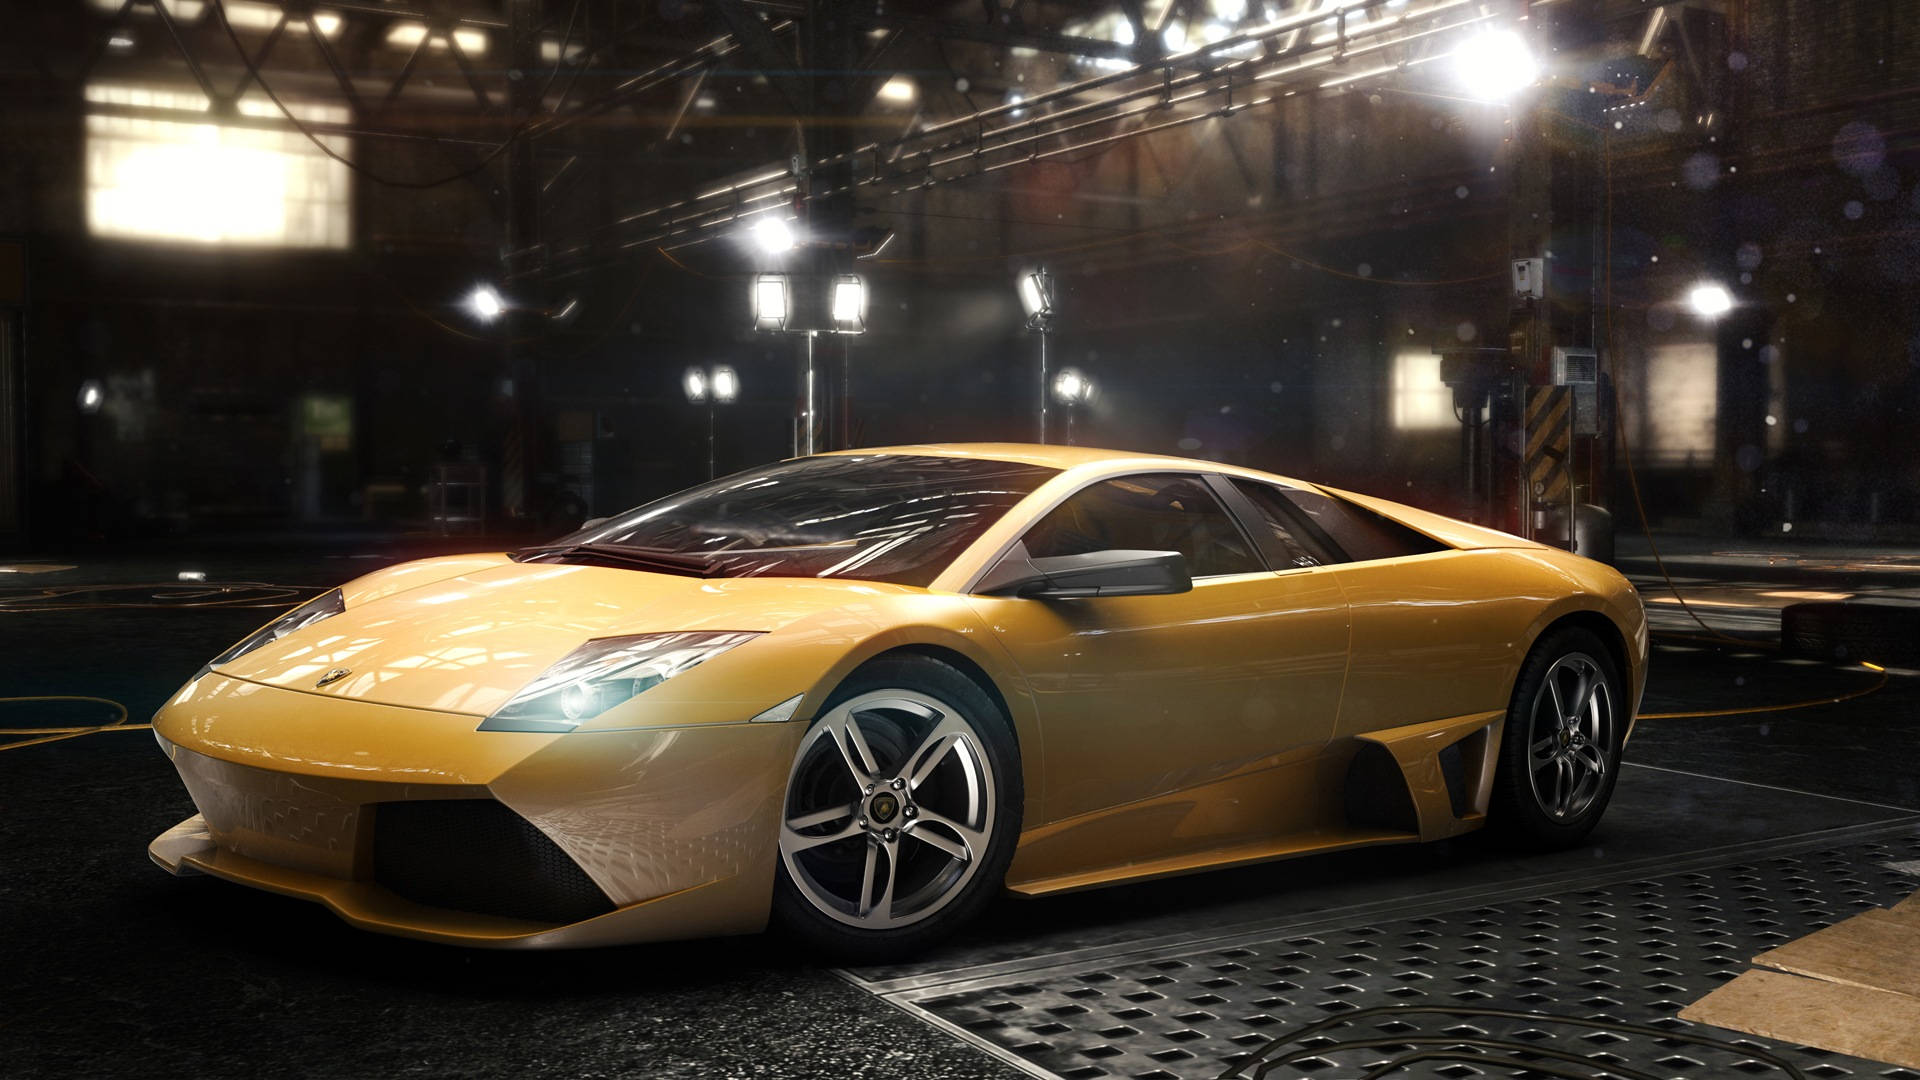 Lamborghini Aventador Full Hd